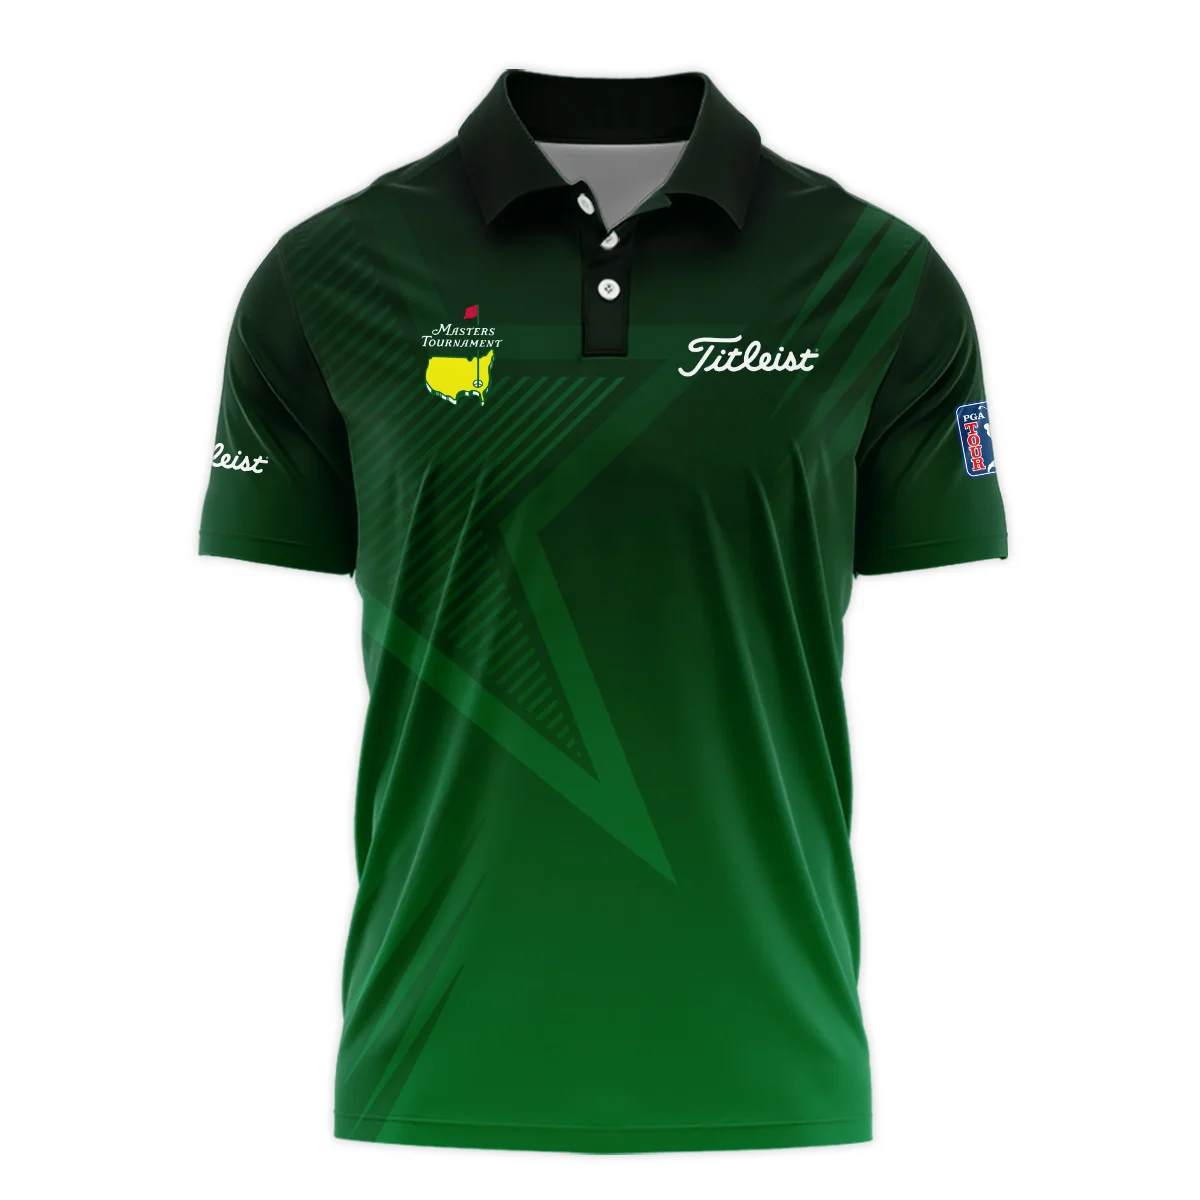 Titleist Masters Tournament Unisex Sweatshirt Dark Green Gradient Star Pattern Golf Sports Sweatshirt